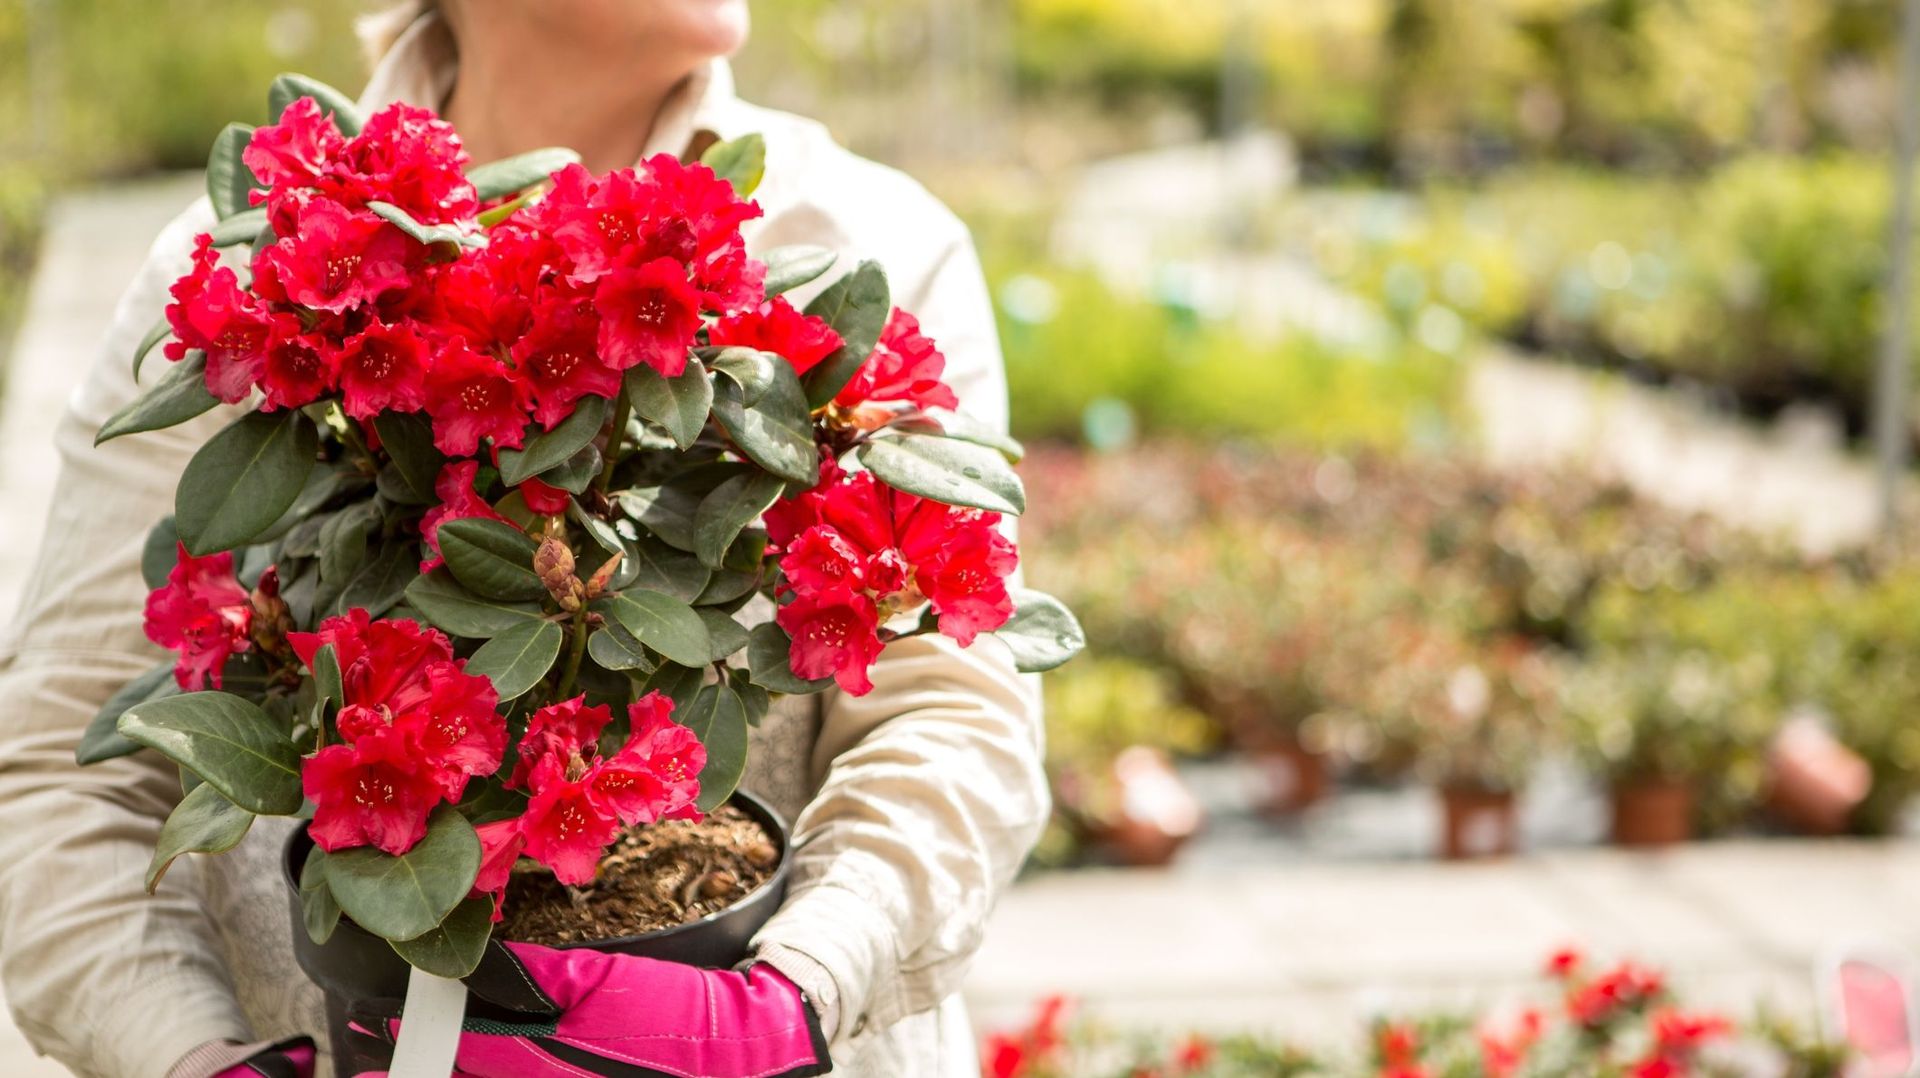 Désormais, on ne peut plus acheter un rhododendron sur un simple coup de cœur pour sa floraison. Il faut privilégier les variétés les plus résistantes aux nouvelles conditions climatiques. Le conseil des pépiniéristes spécialisés est essentiel.